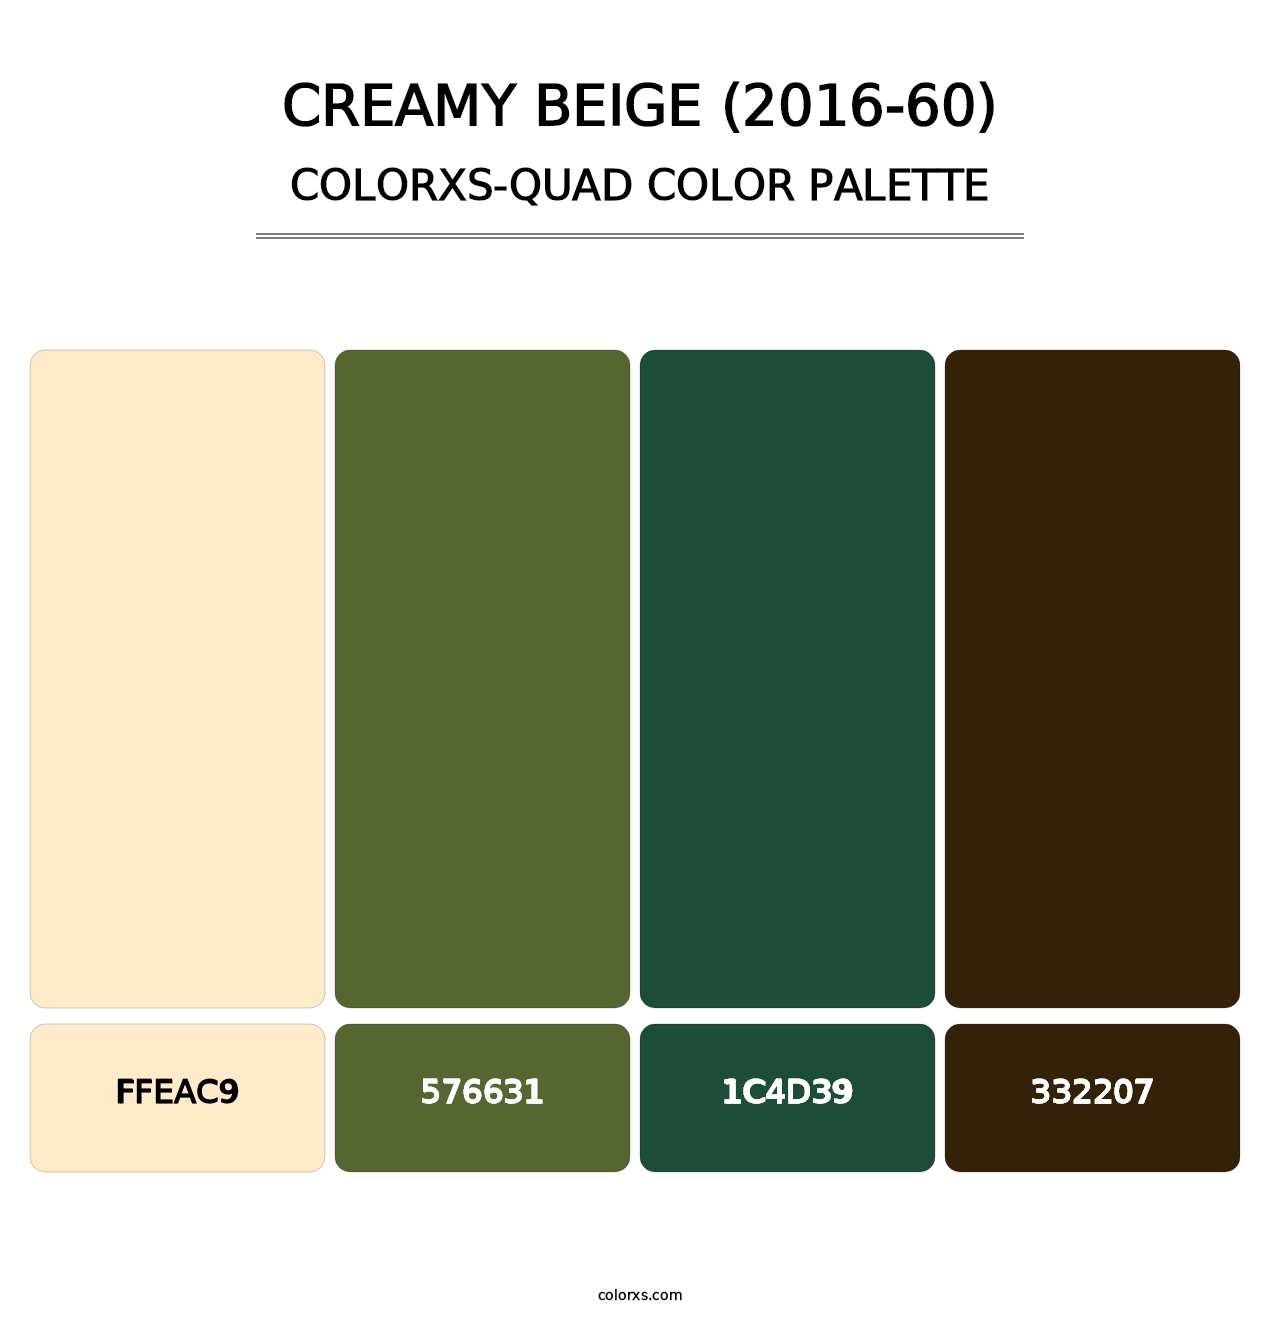 Creamy Beige (2016-60) - Colorxs Quad Palette